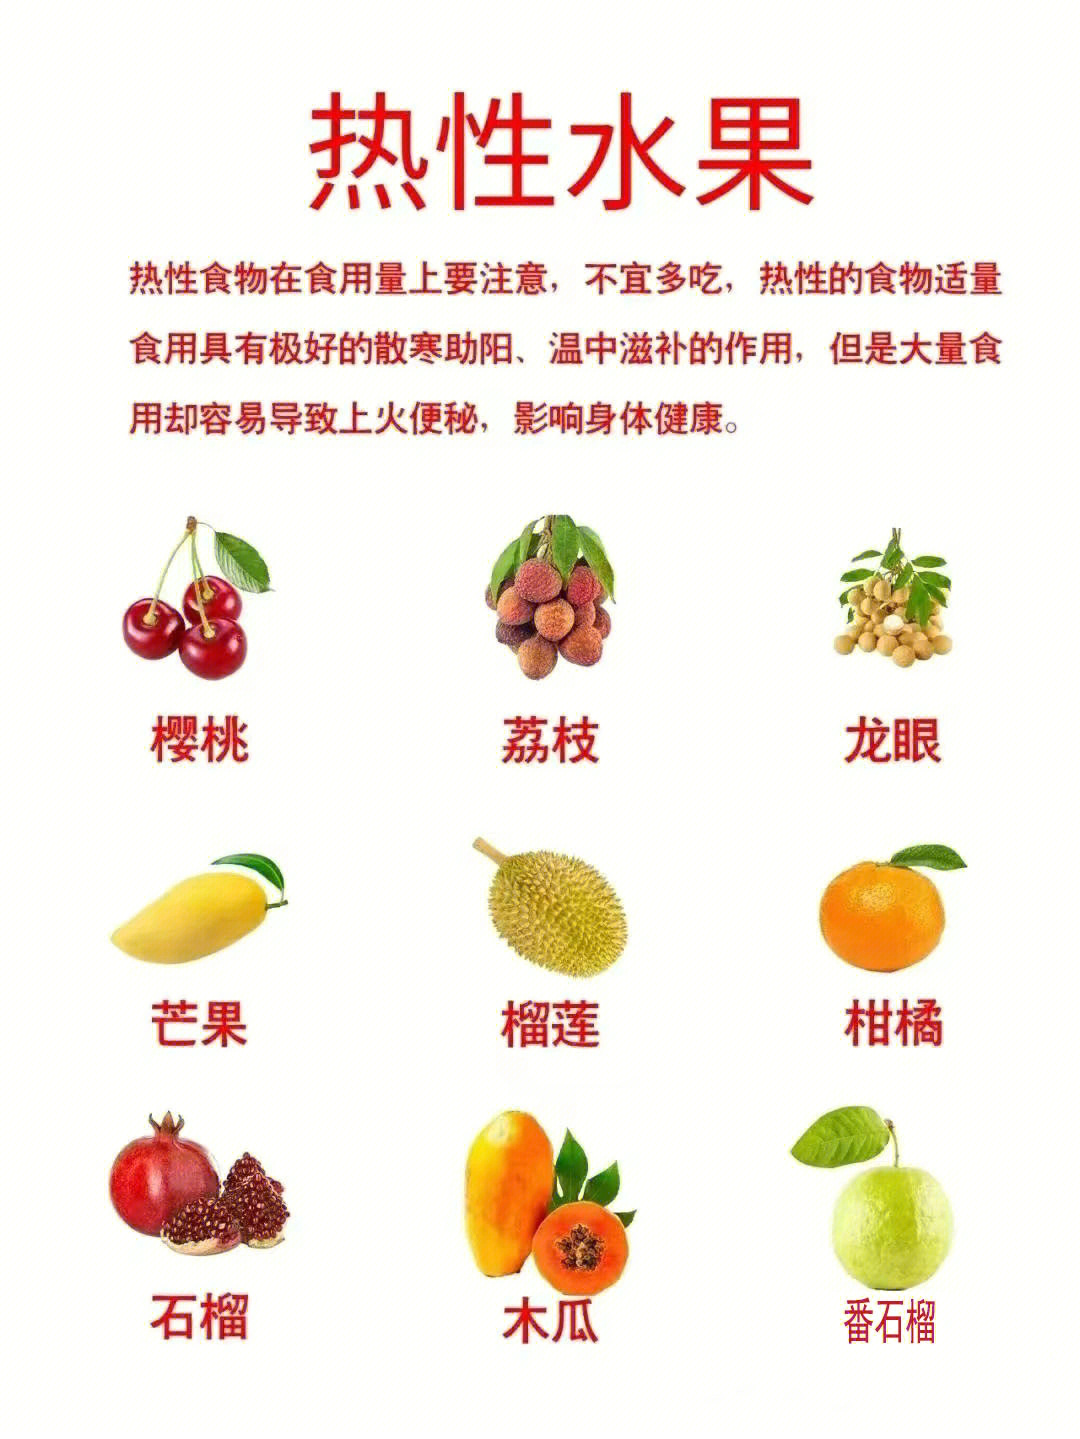 而秋季的很多水果都属于热性水果或者温性水果,梨子,西瓜,香瓜等都